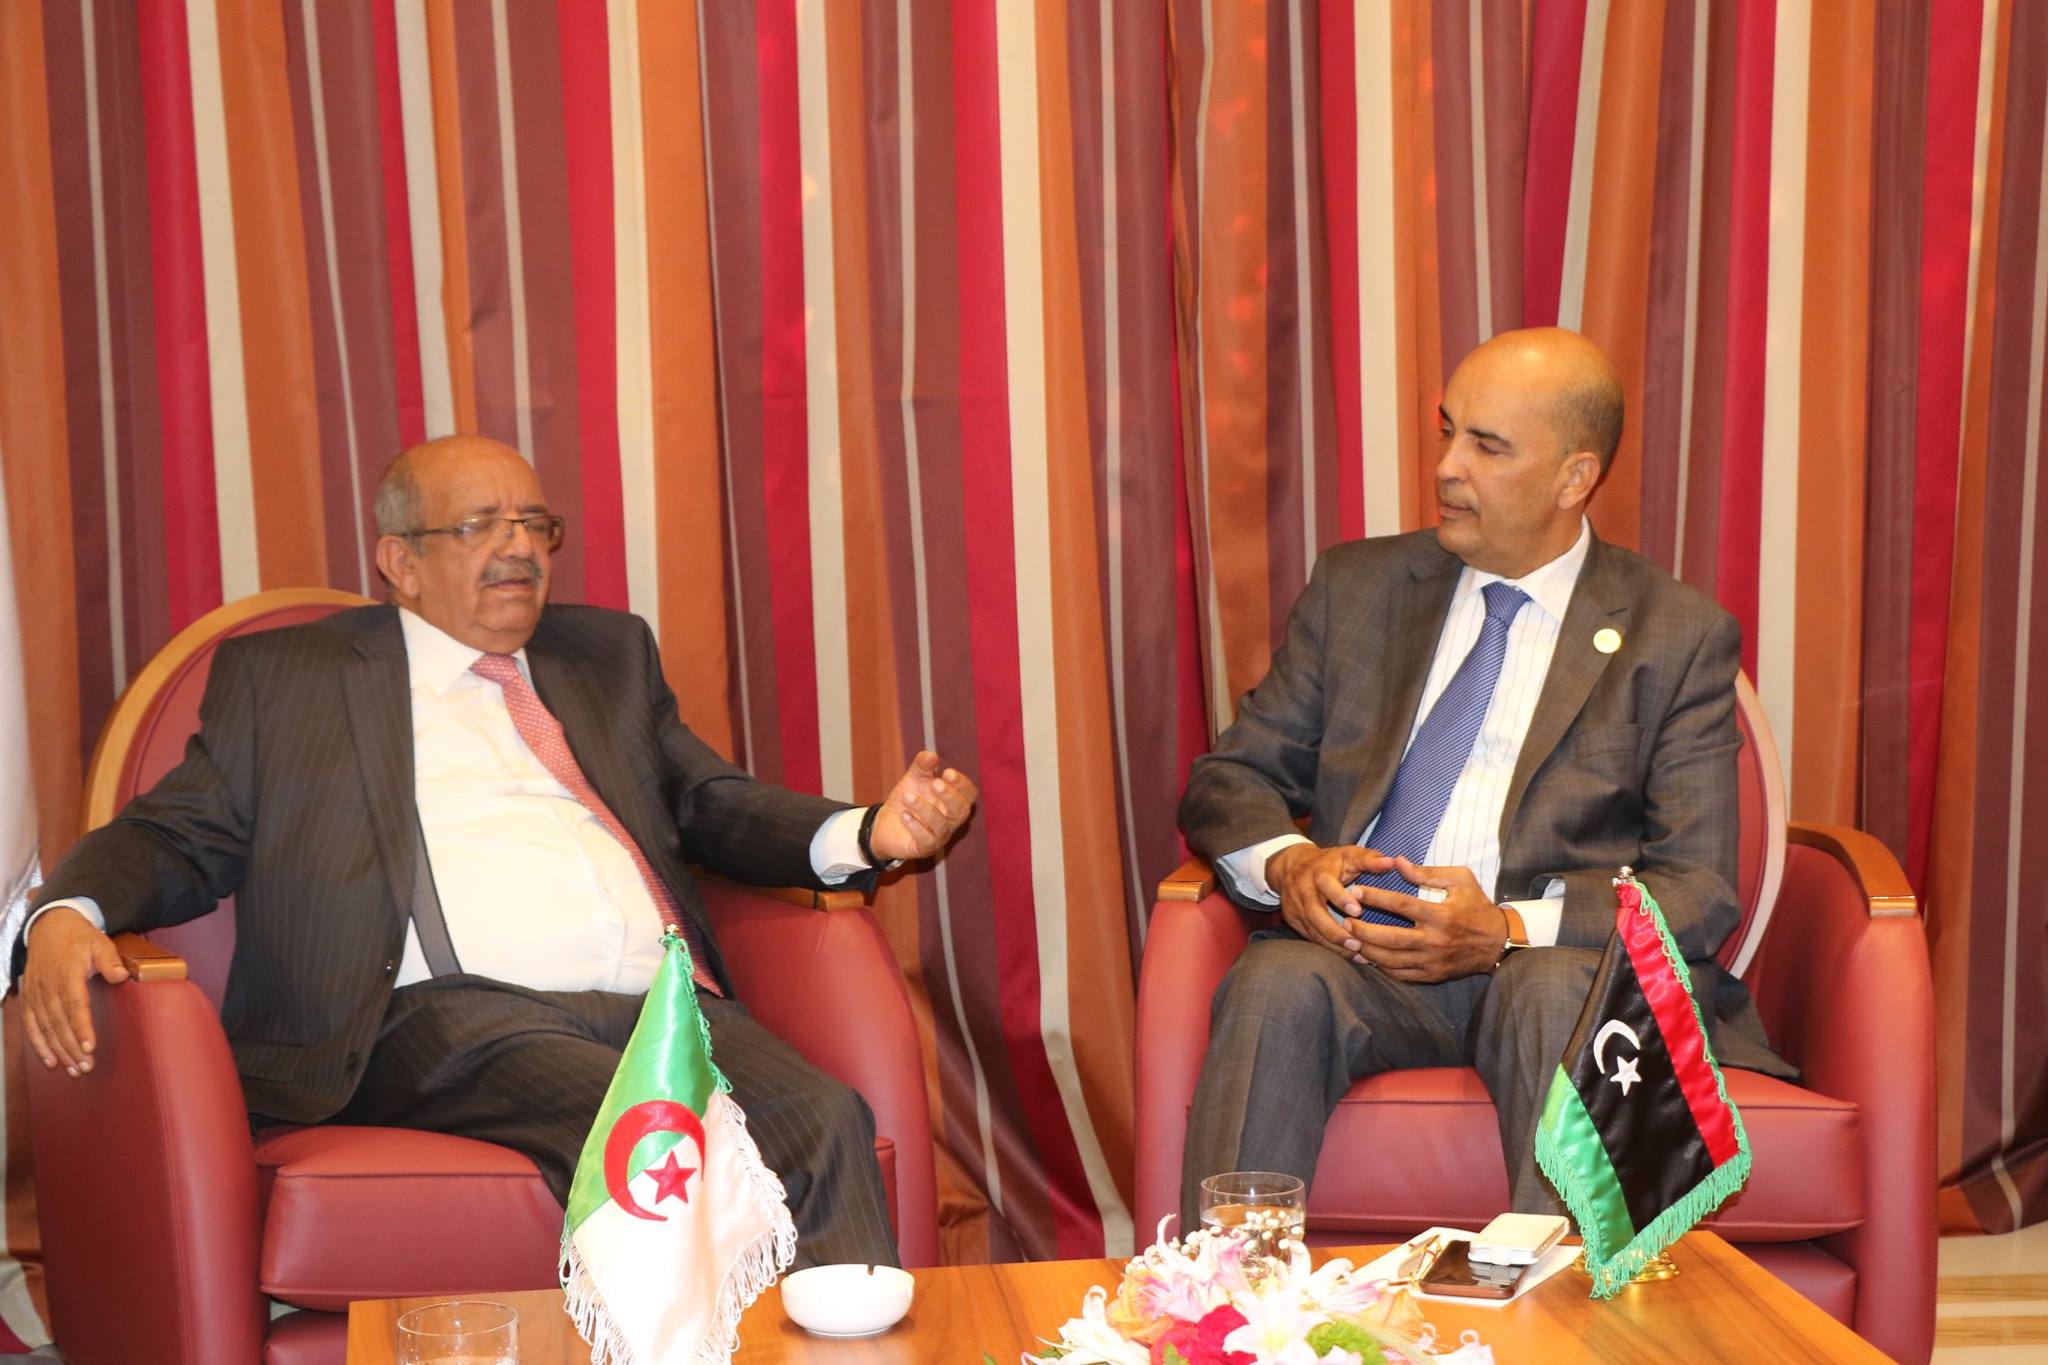 الجزائر تطلع موسى الكوني على أجندة اجتماع دول الجوار الليبي بالنيجر